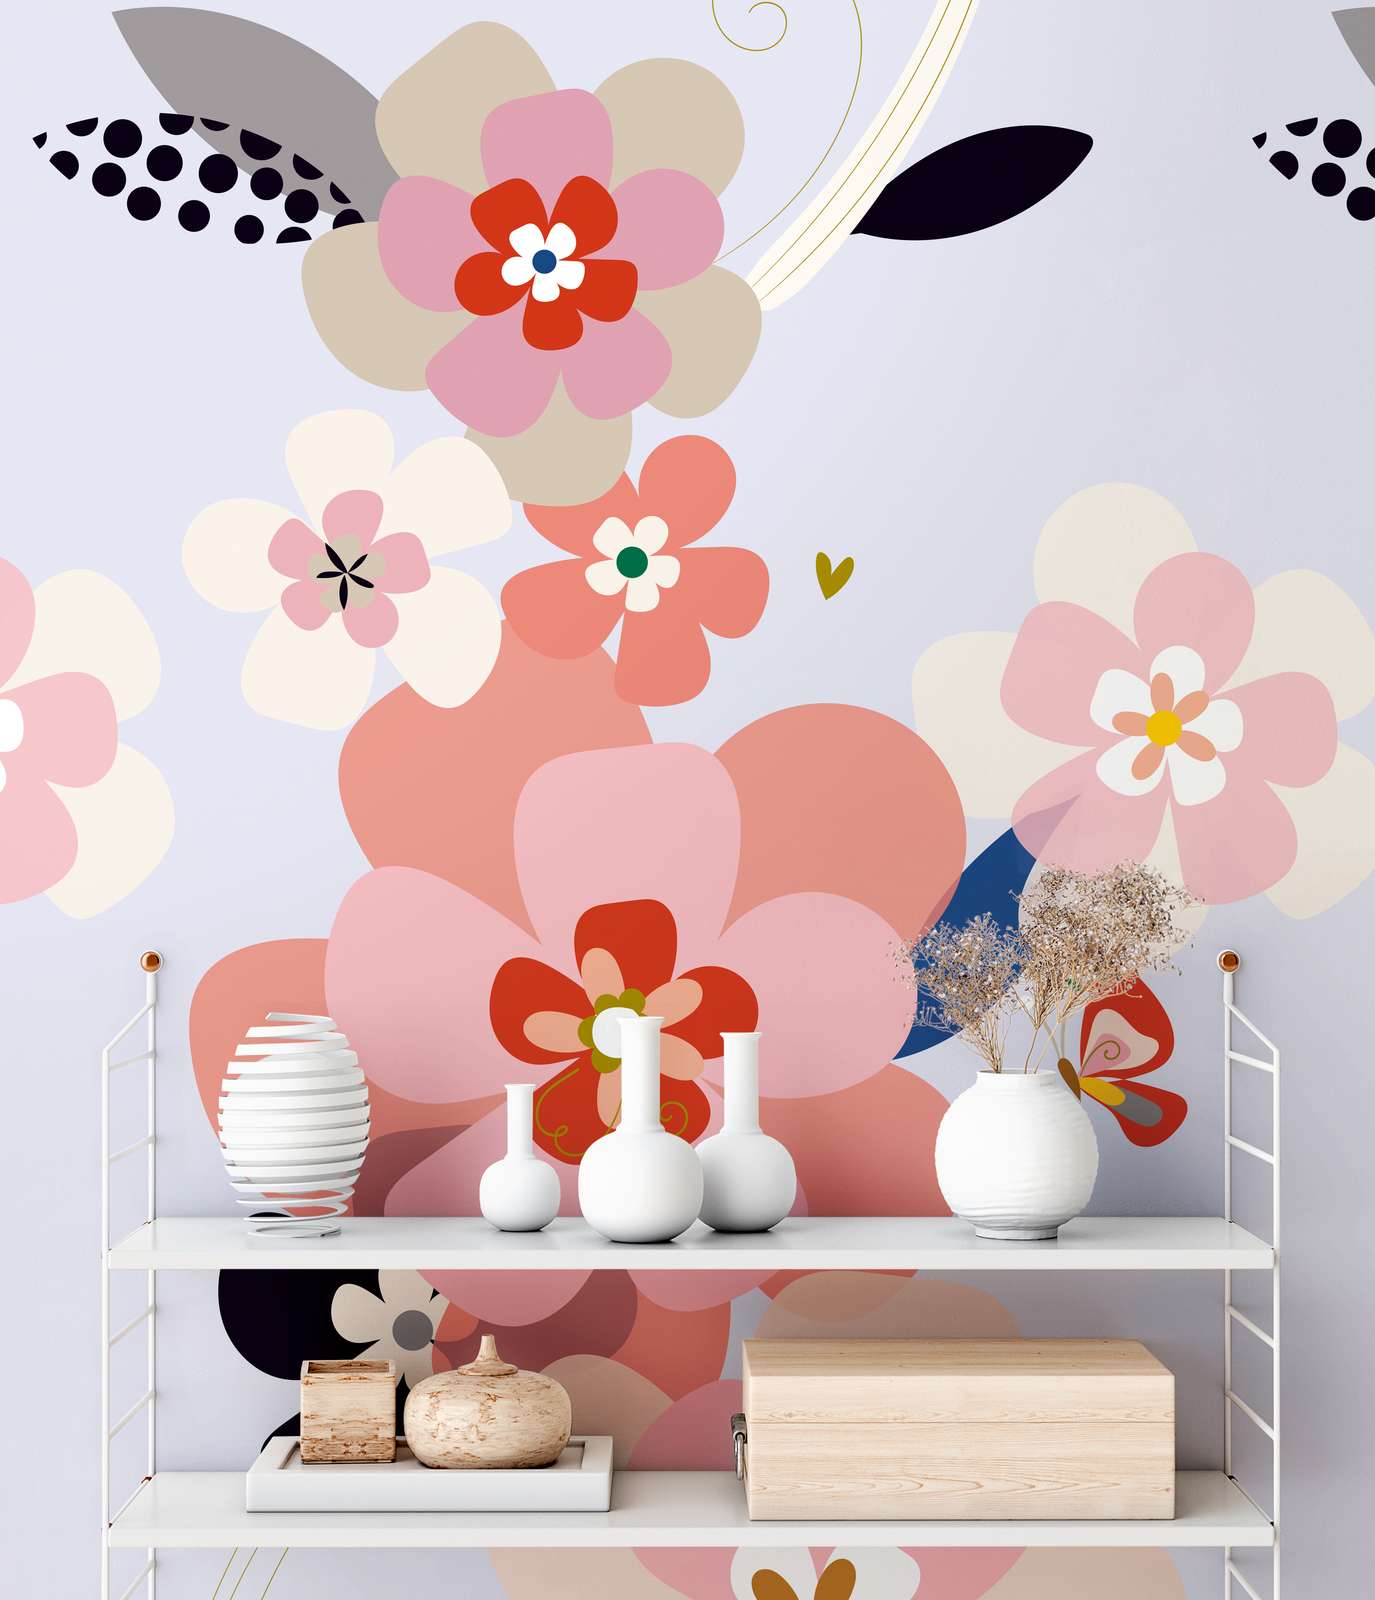             Große Blumenmotiv Tapete im minimalistischem Stil – Bunt, Rosa, Flieder
        